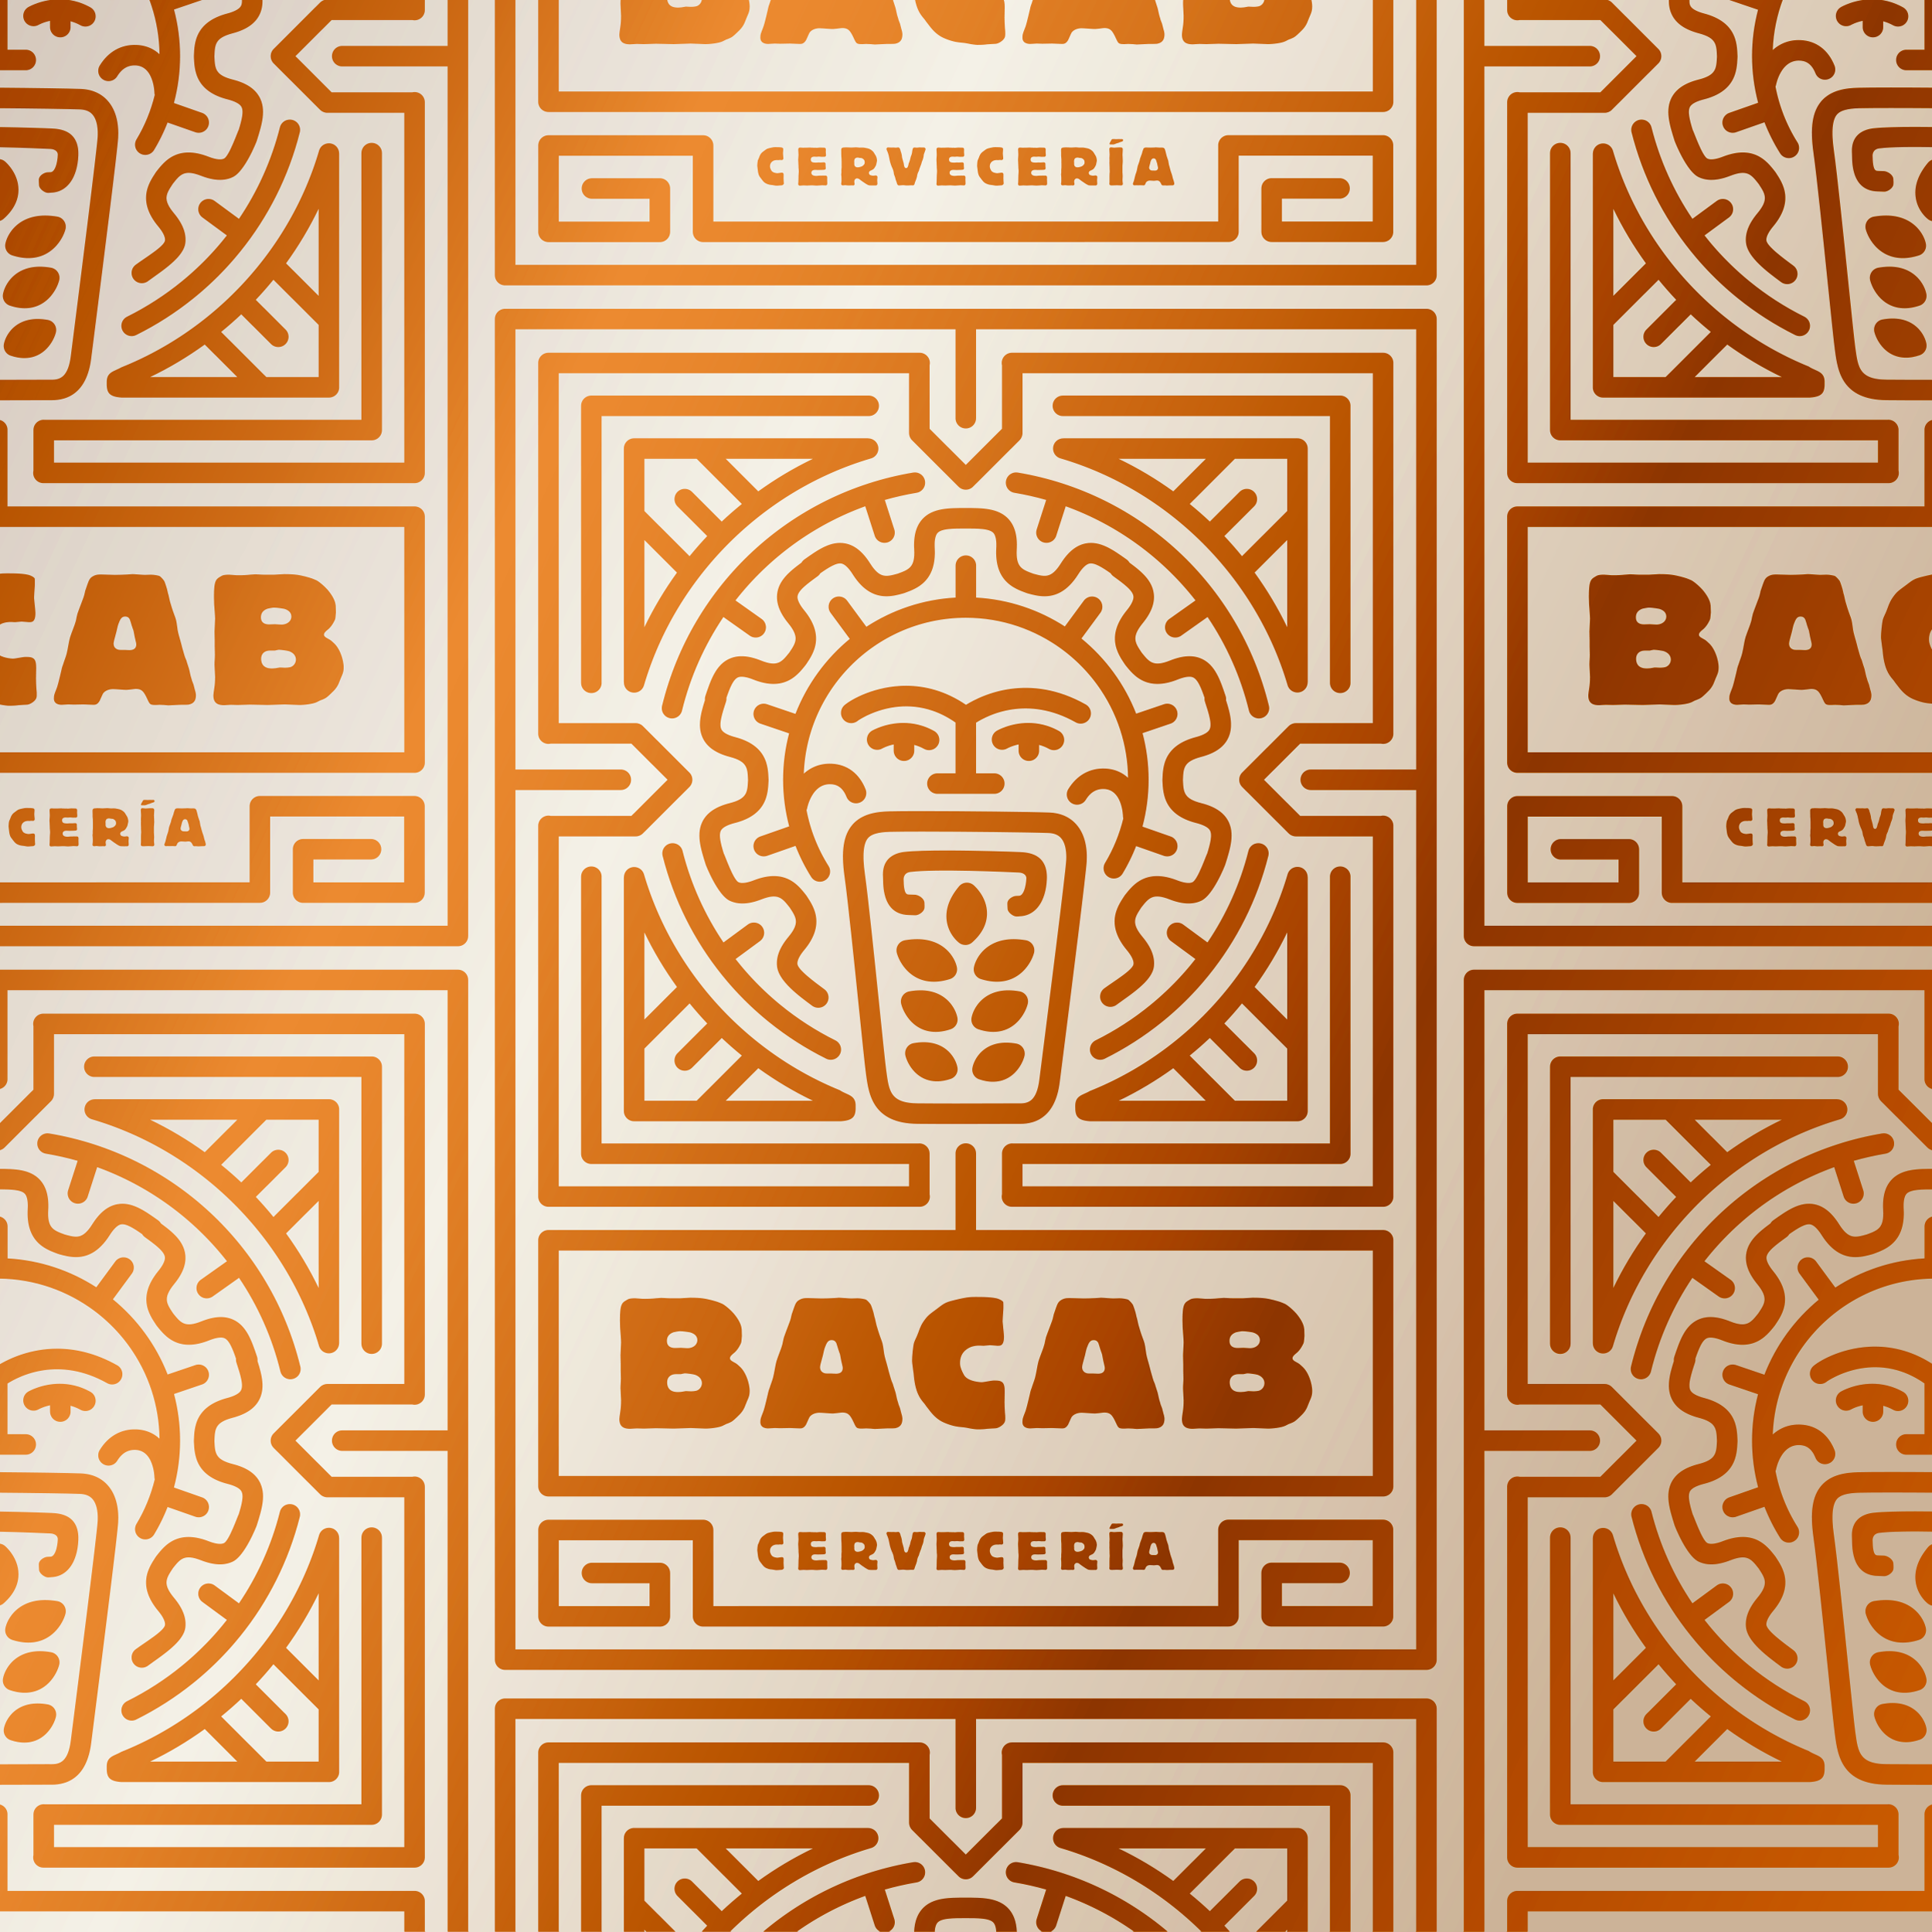 Bacab Cervecería Logo pattern by Sunday Lounge